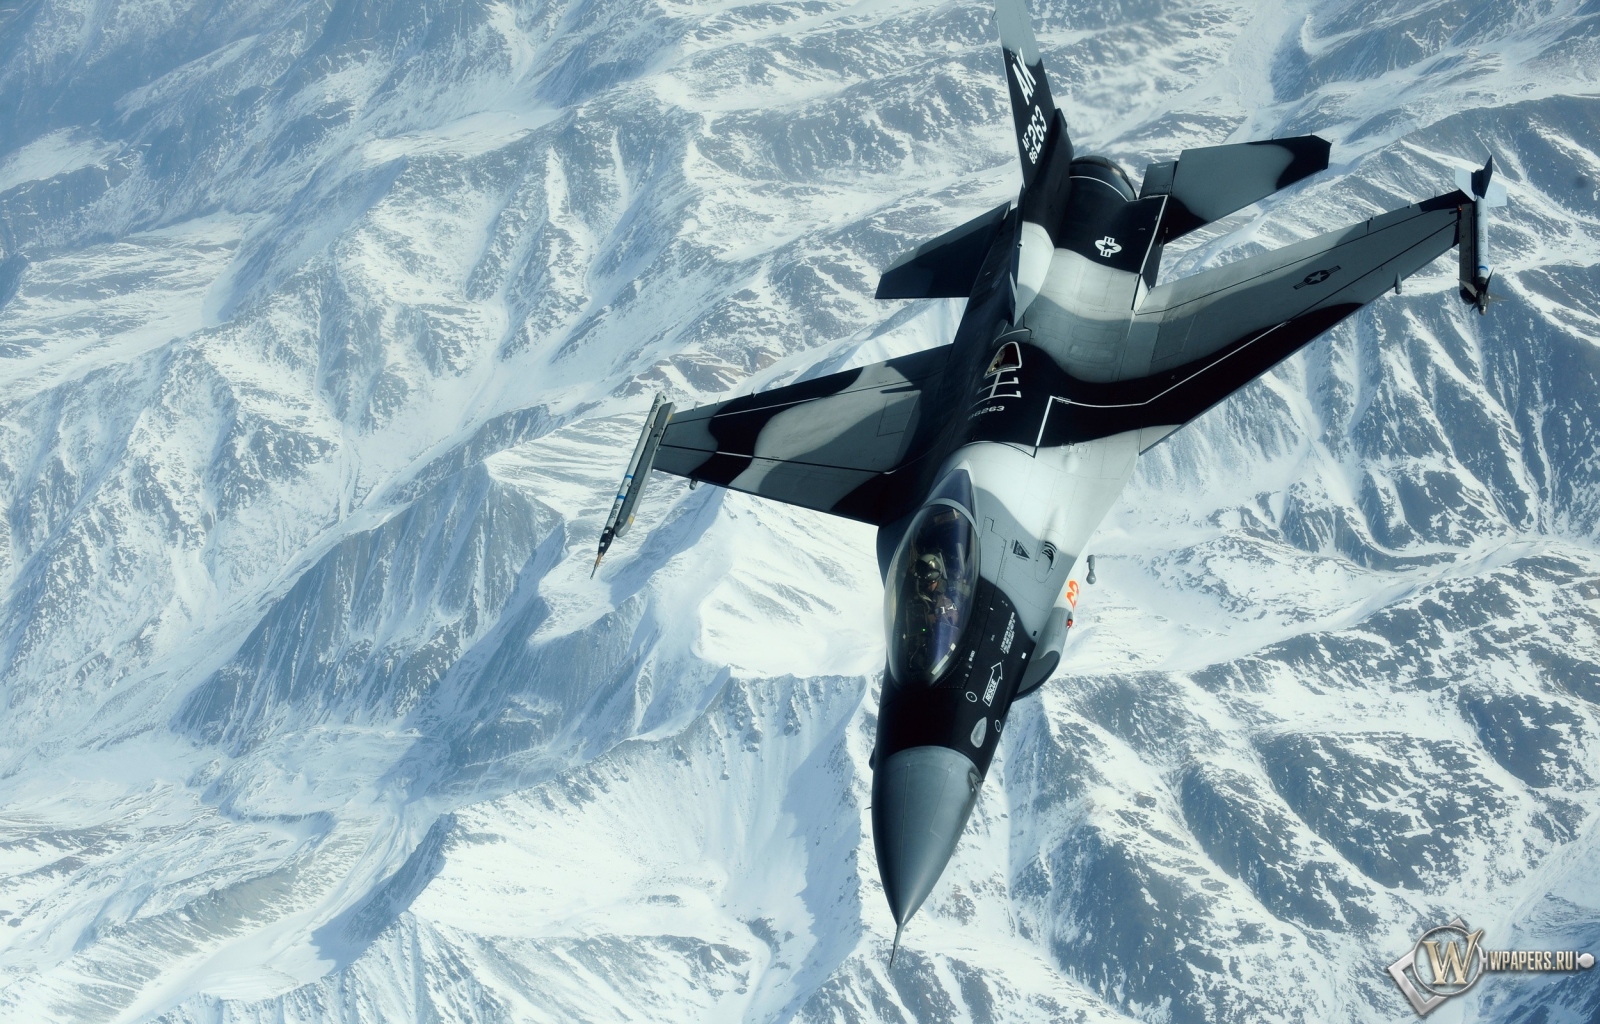 Истребитель над снежными пиками гор 1600x1024